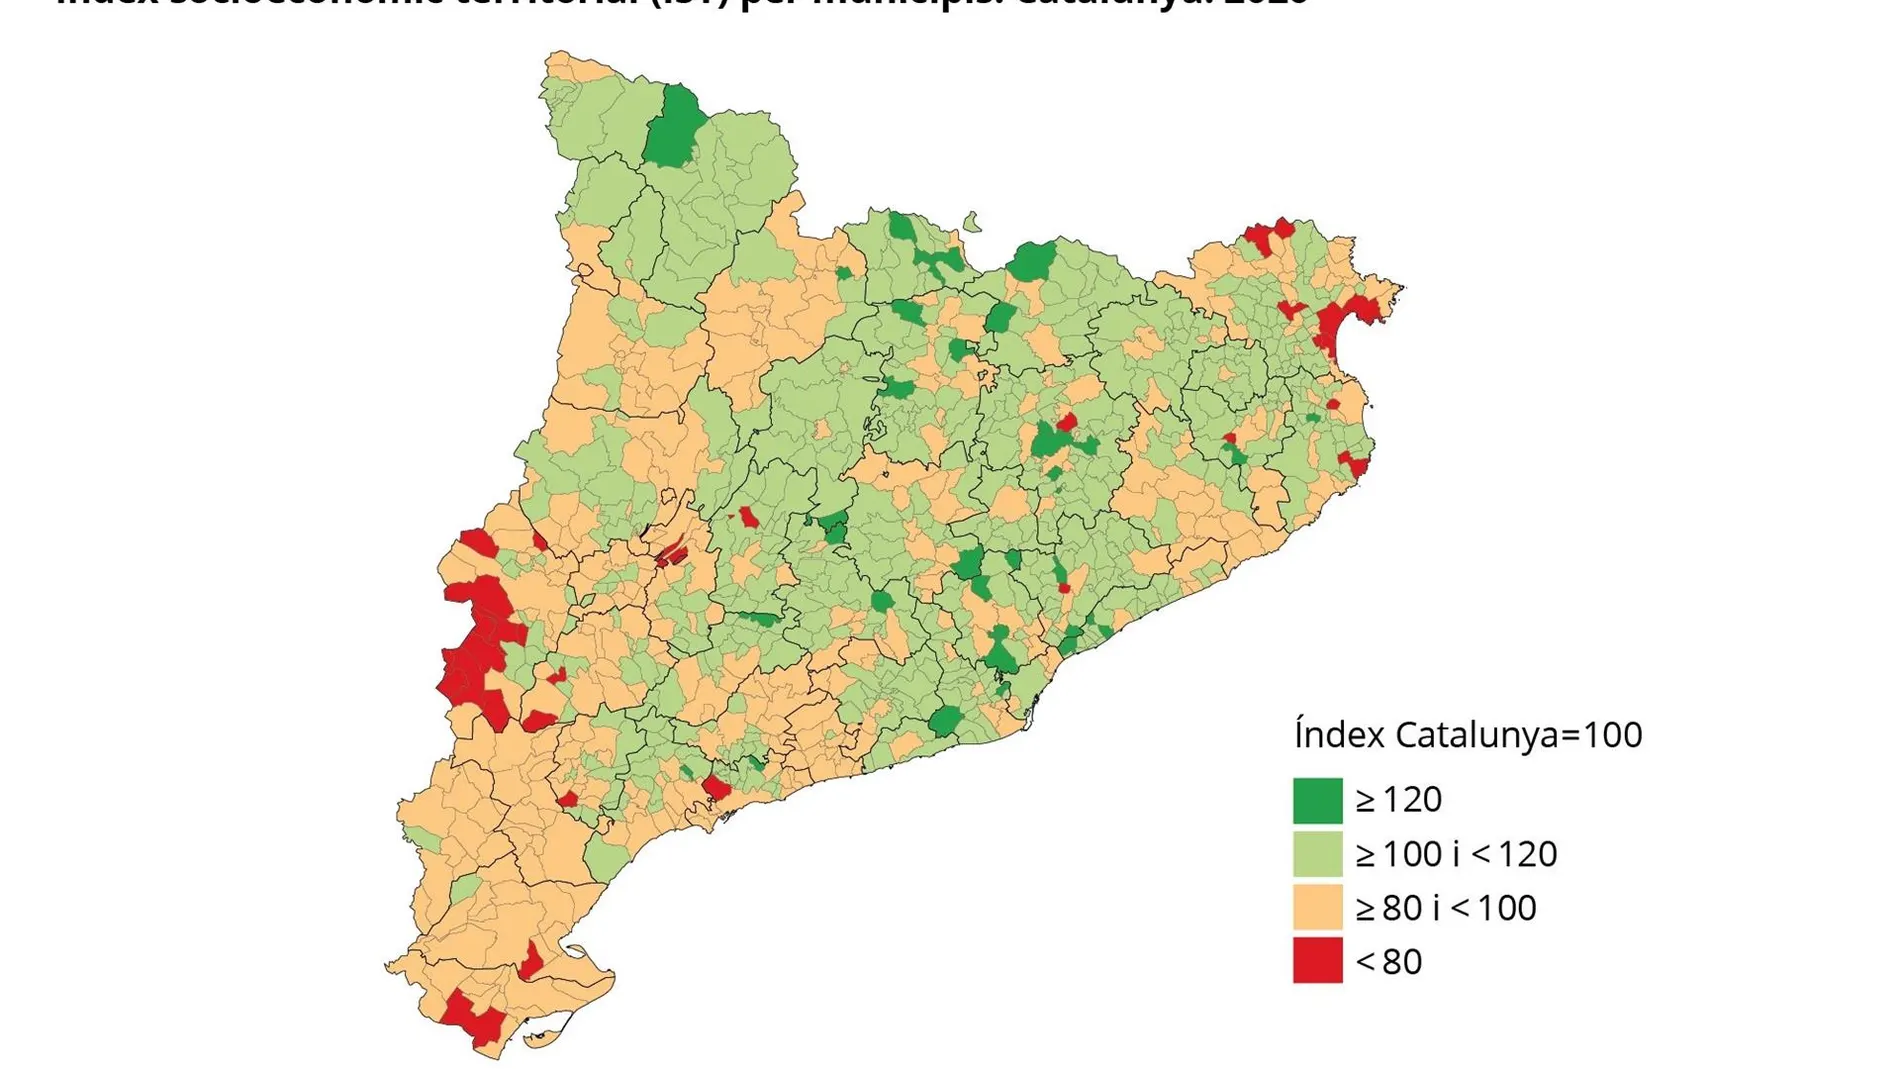 Mapa de la riqueza catalana